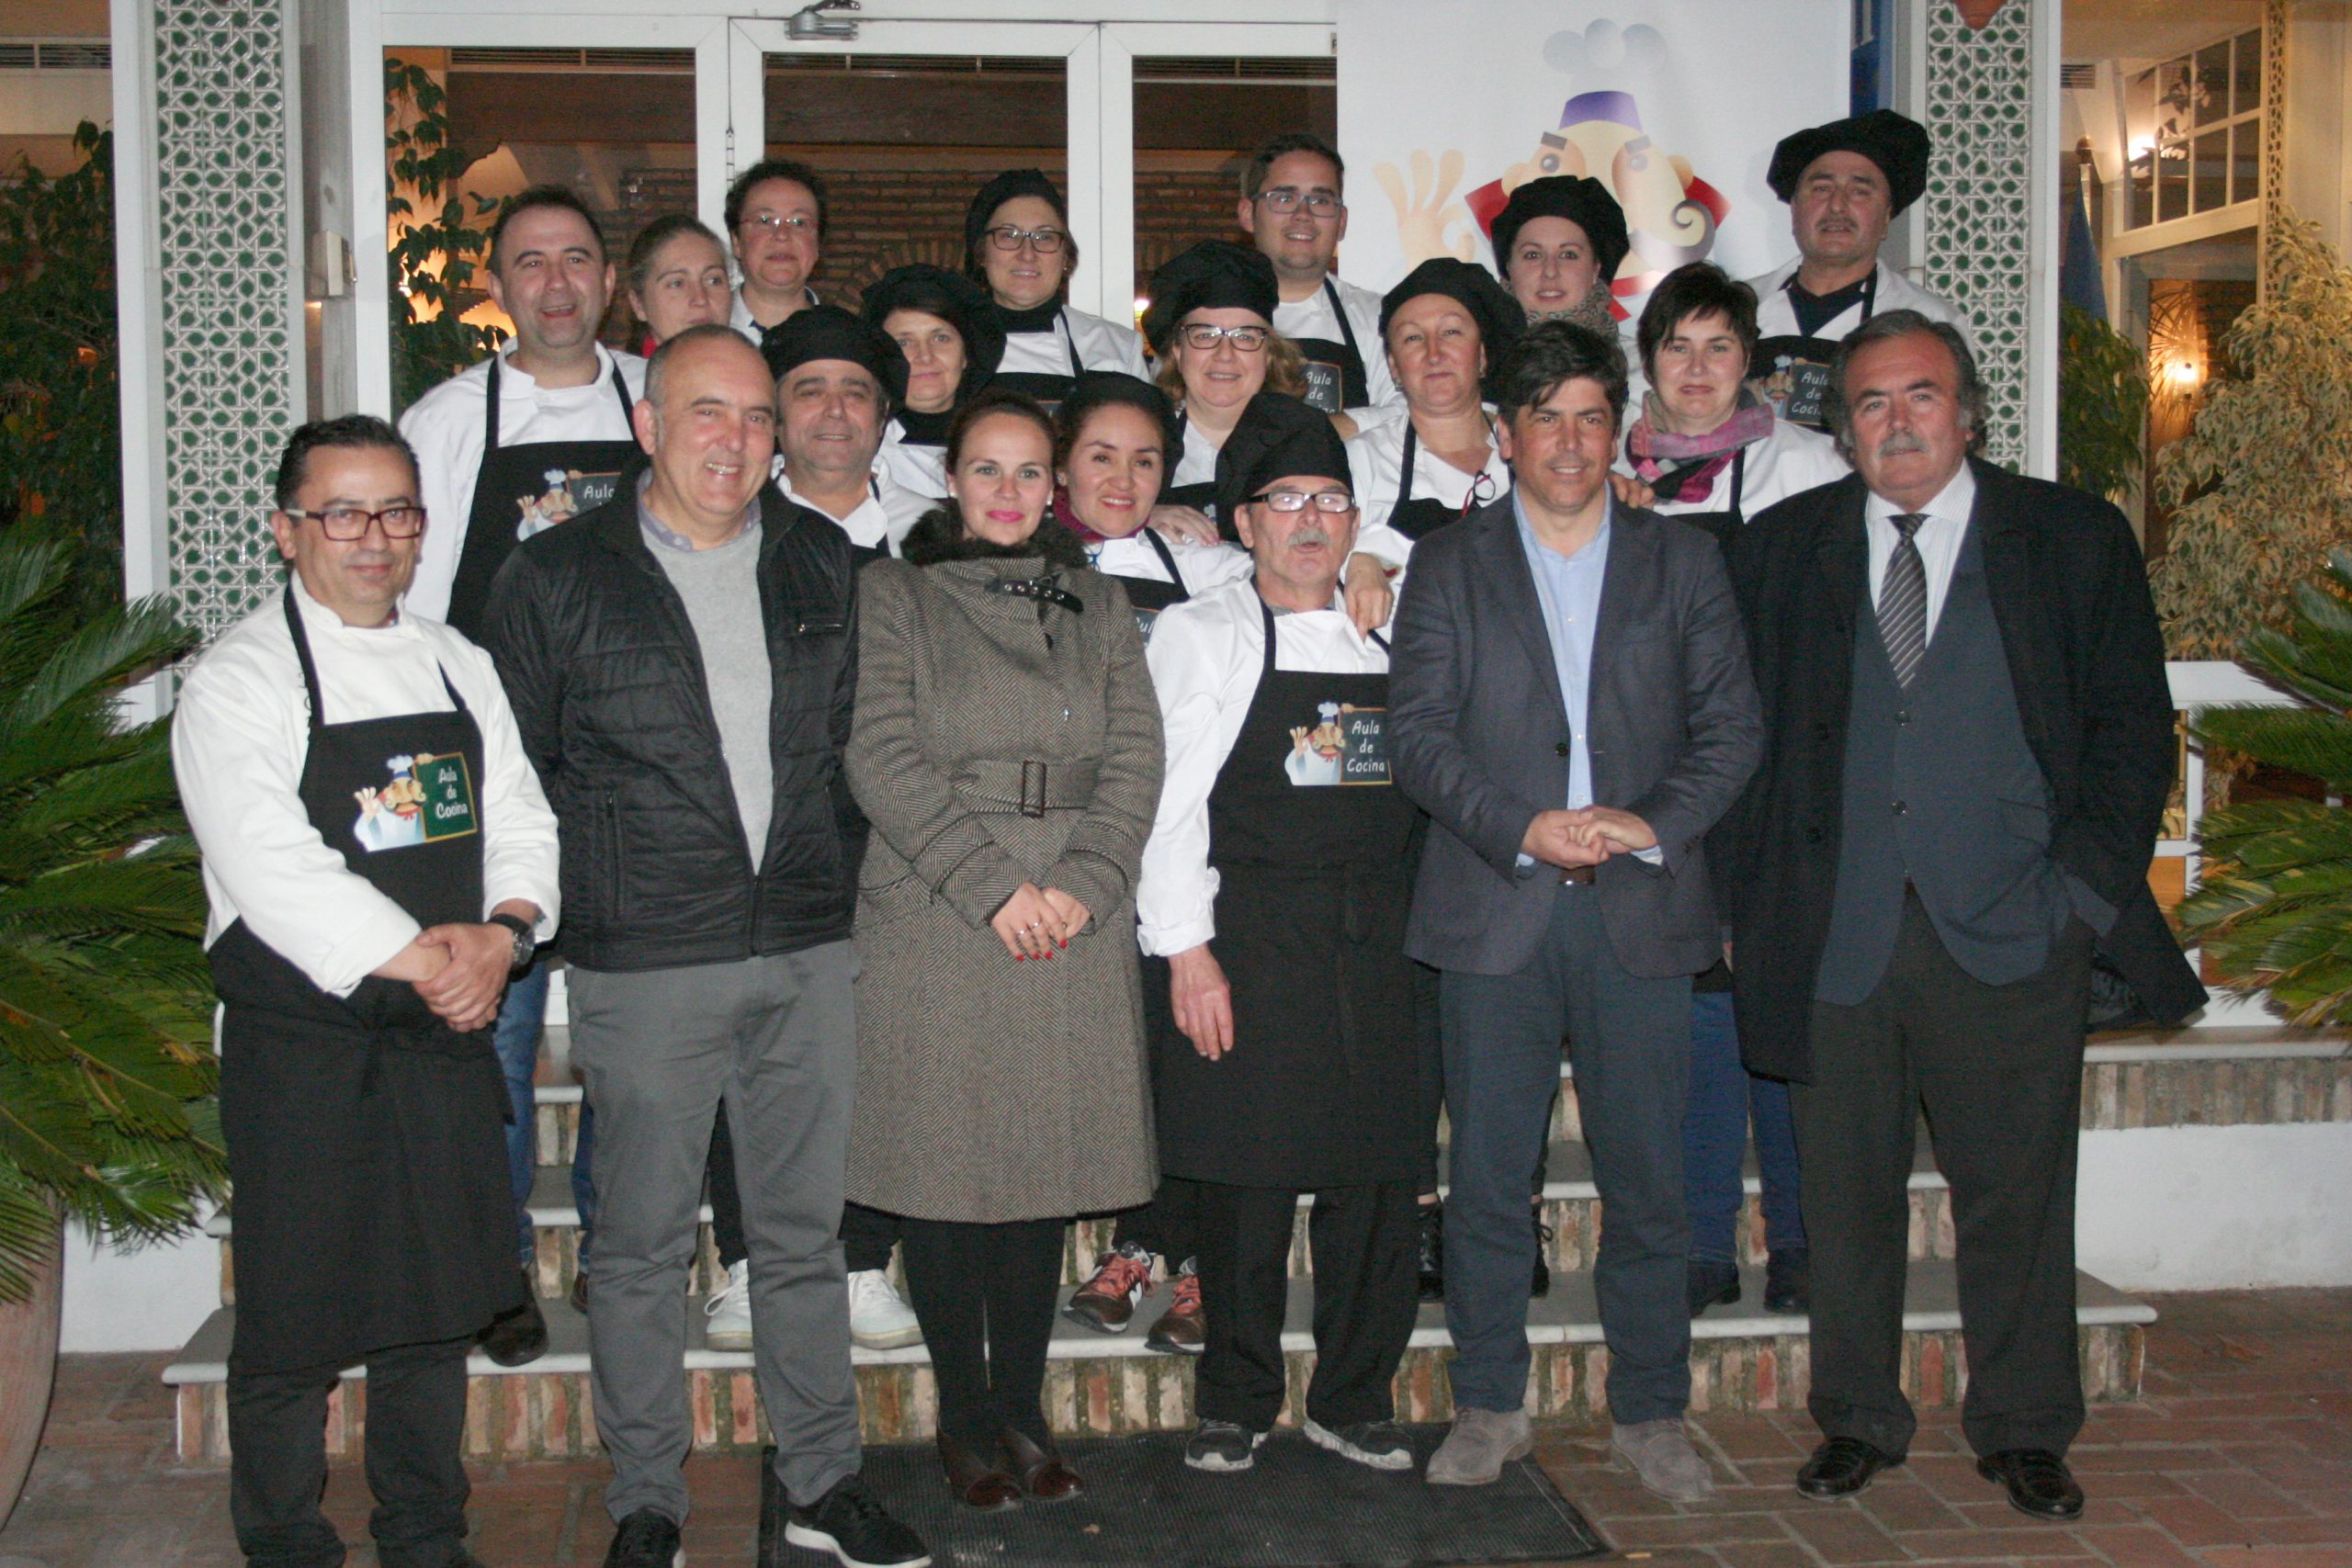 Concluye el curso de cocina para profesionales organizado por FIDES en Montilla